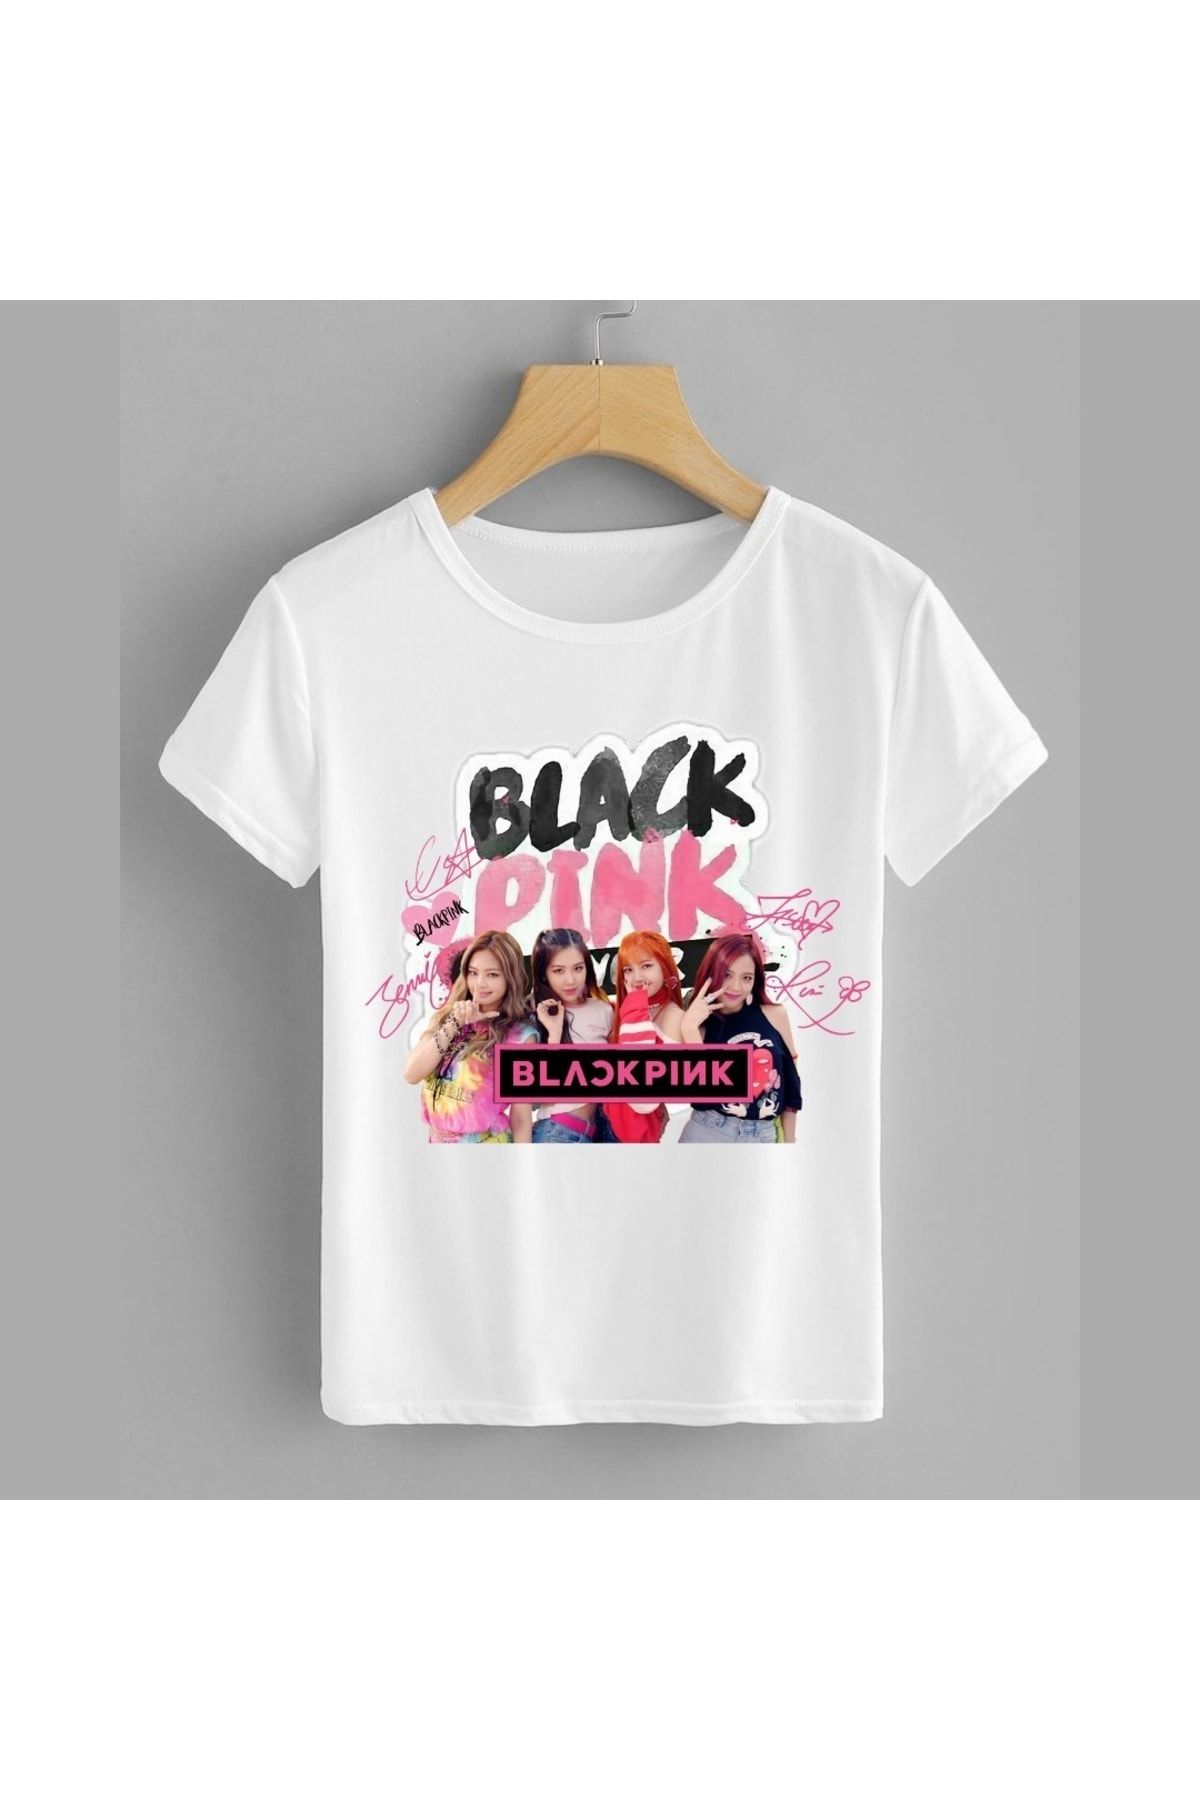 Genel Markalar Blackpınk K-pop Güney Kore Müzik Grubu Imzalı Baskılı Tişört